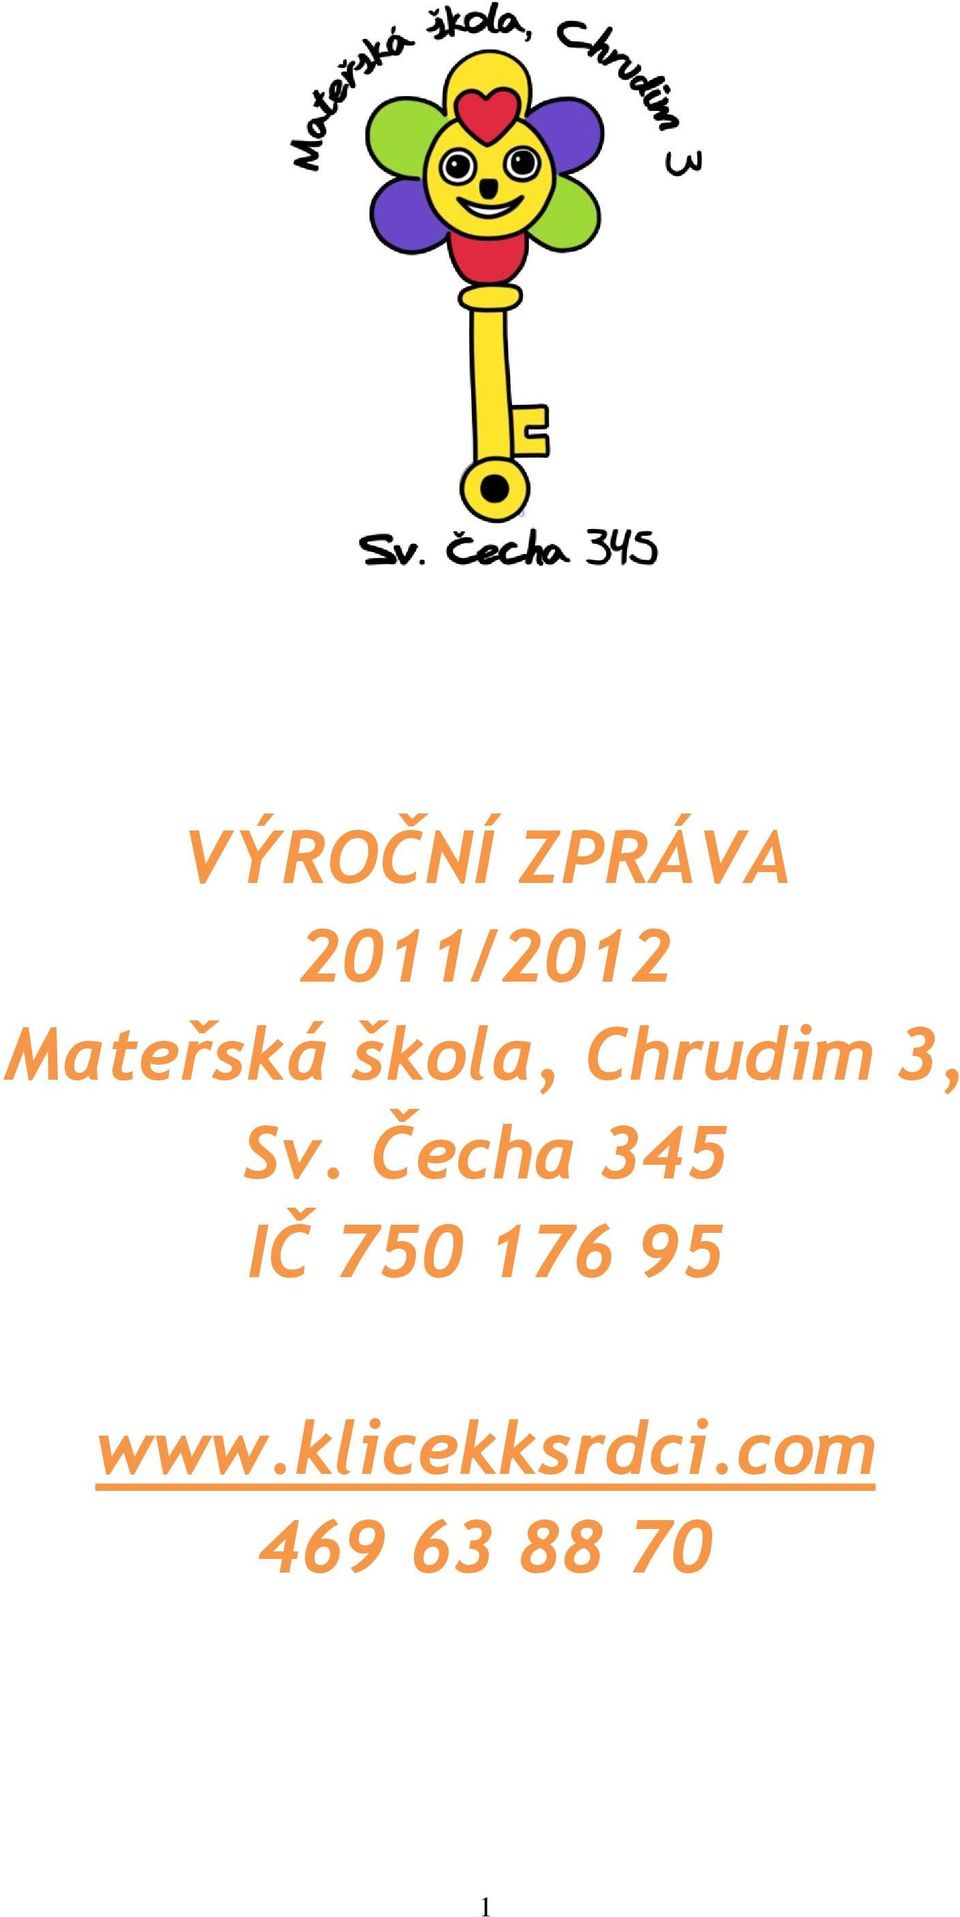 Sv. Čecha 345 IČ 750 176 95